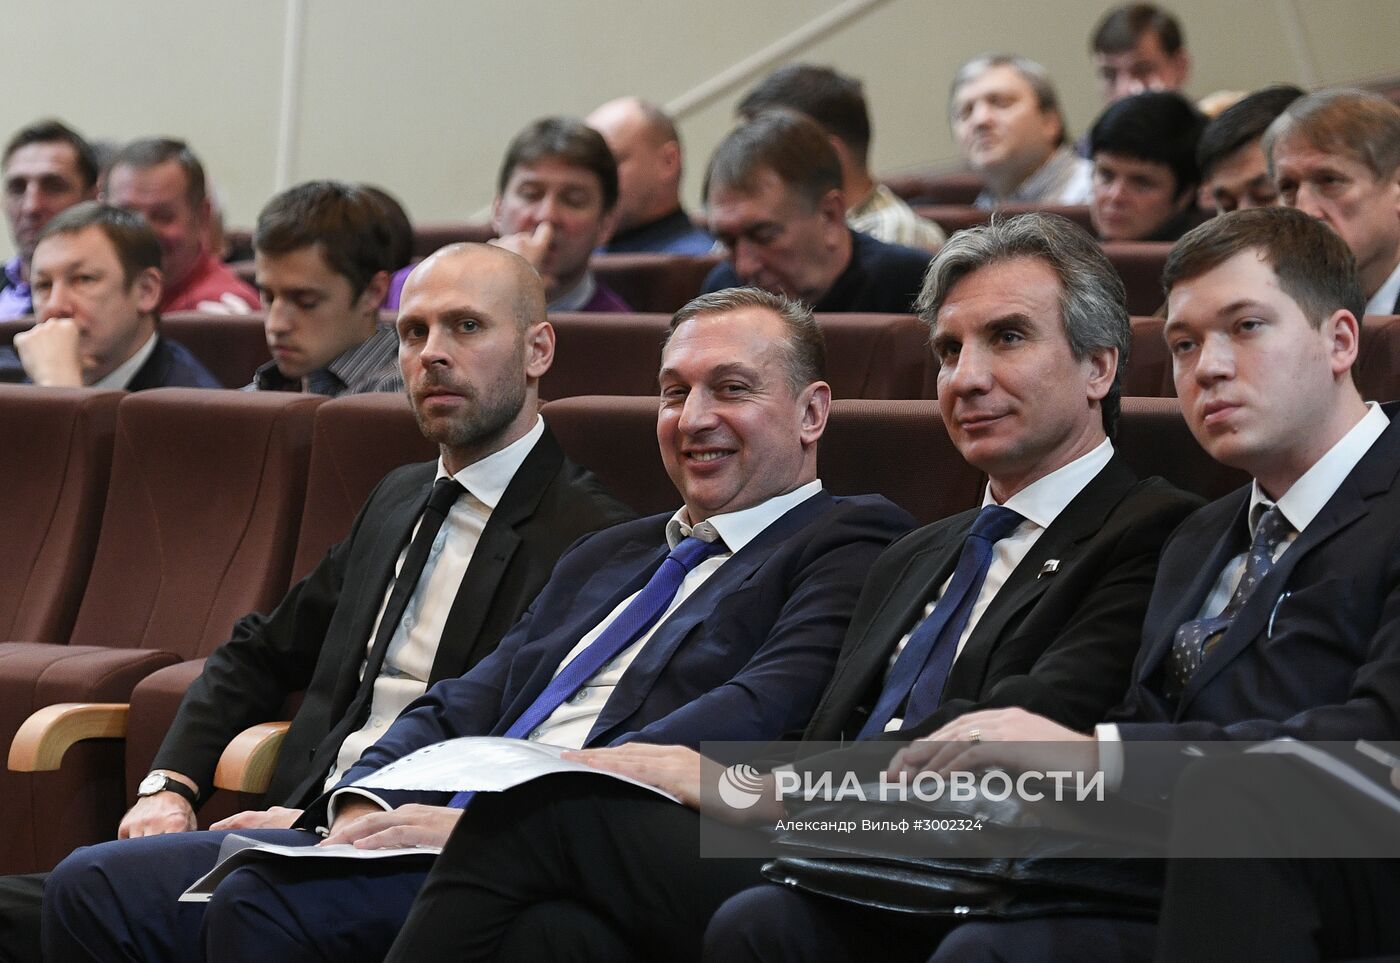 Отчетно-выборная конференция Федерации водного поло России